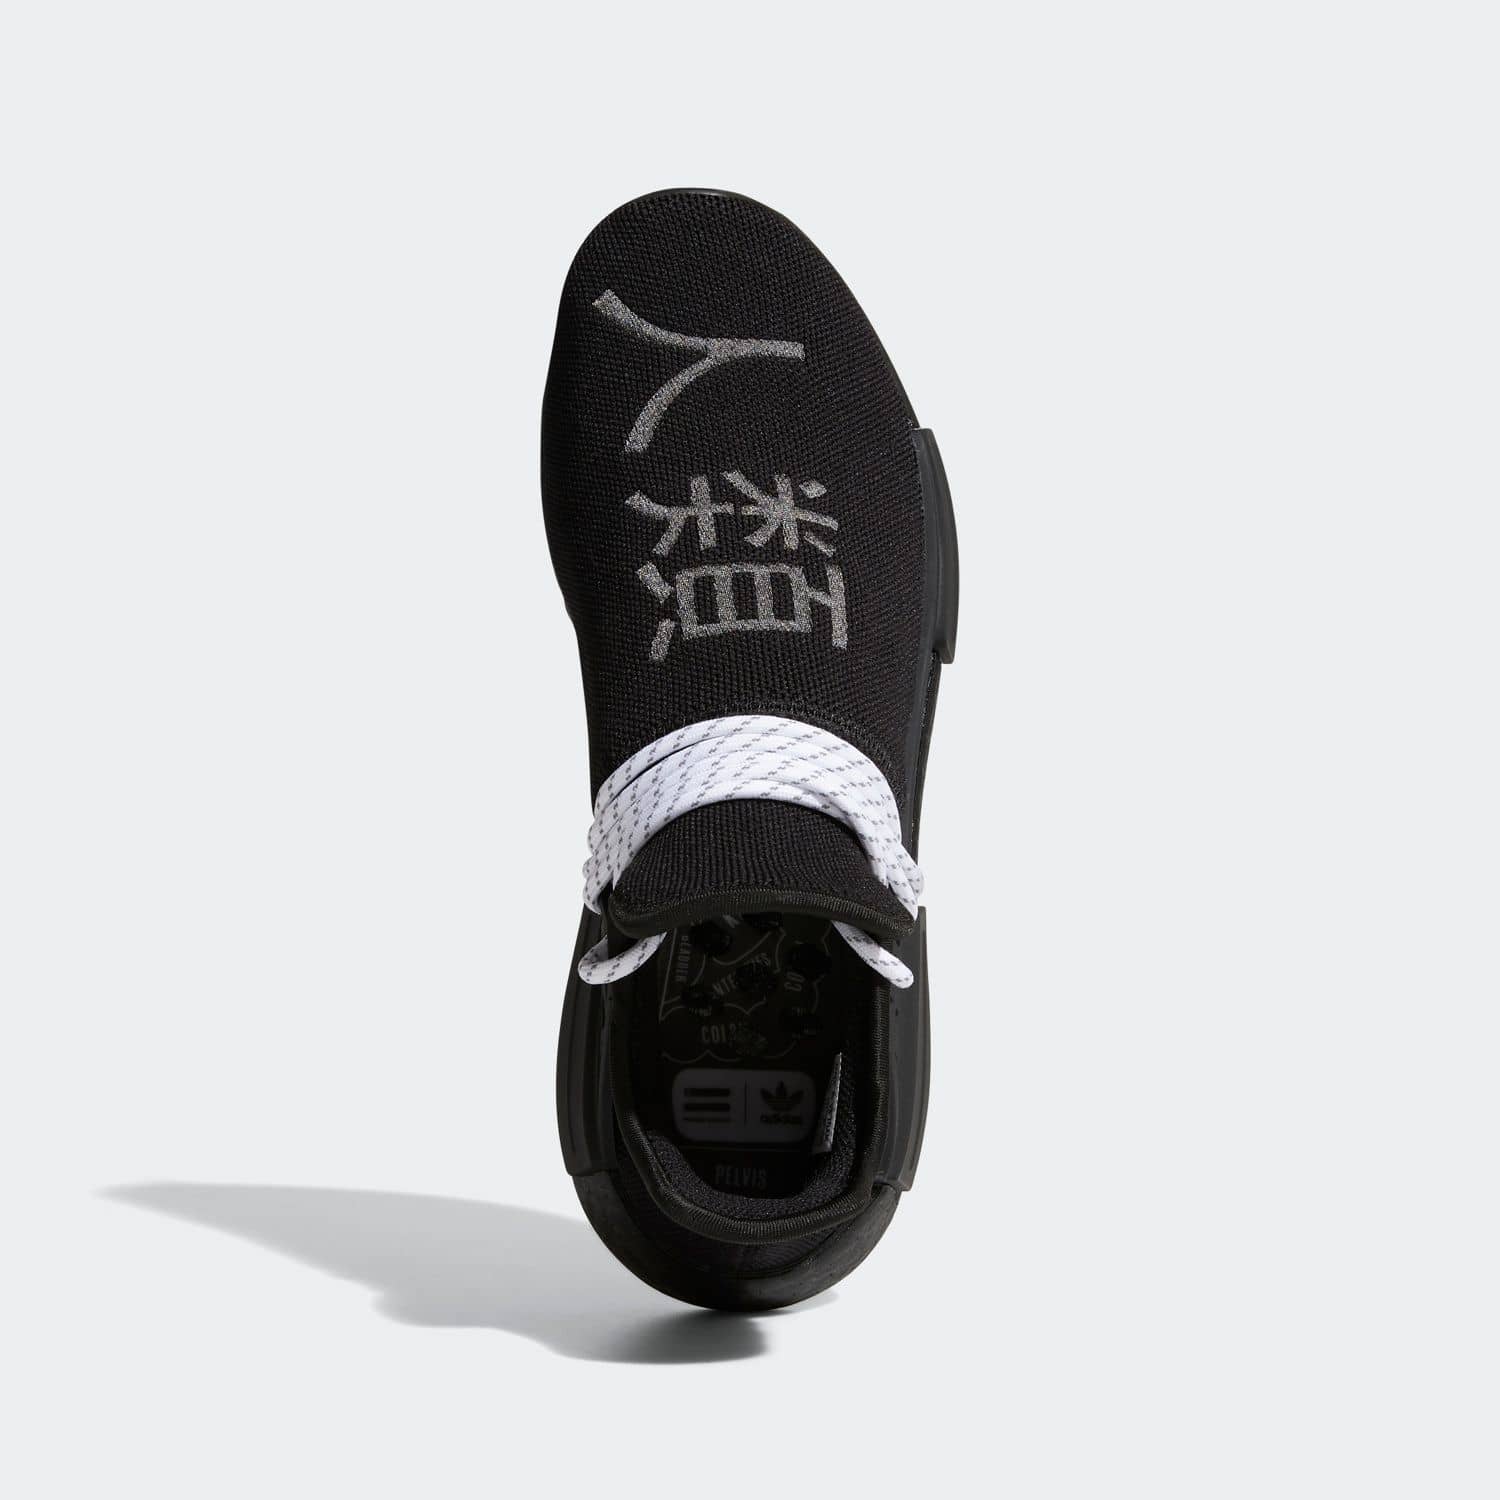 퍼렐 윌리암스 x 아디다스 NMD HU 트리플 블랙(Pharrell Williams adidas Originals NMD HU Triple Black)-GY0093